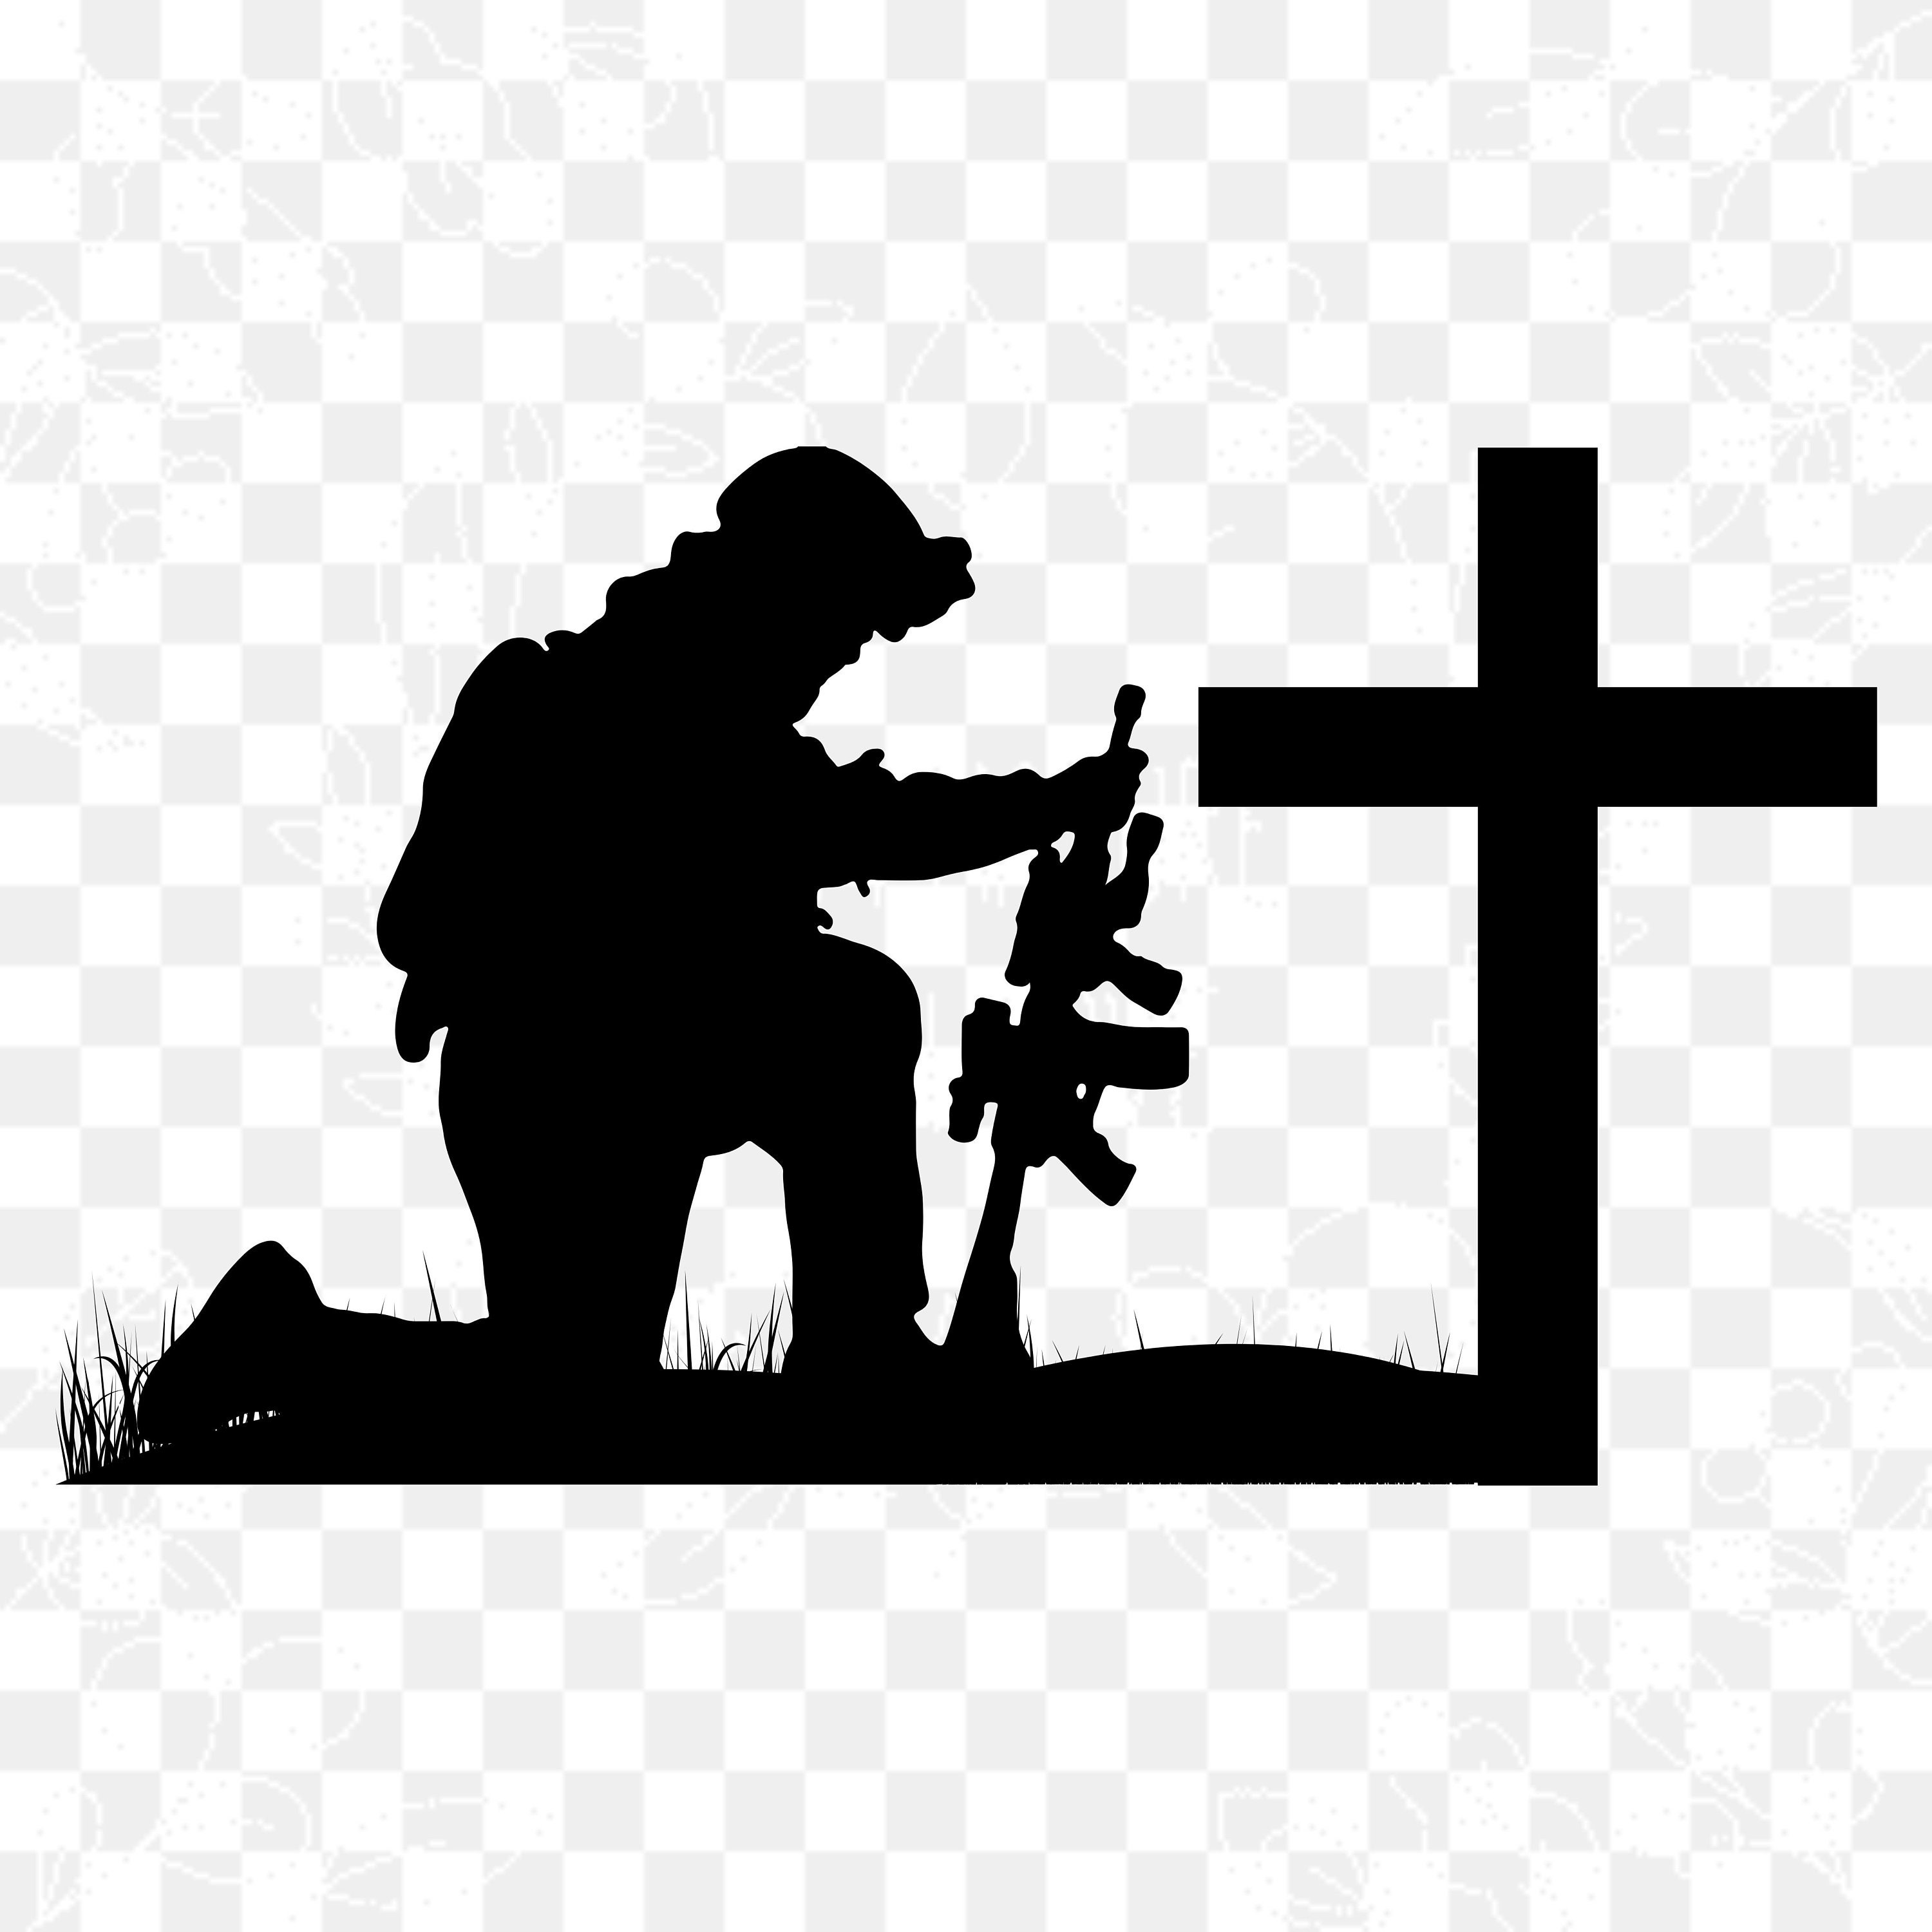 Silhouette of soldier kneeling